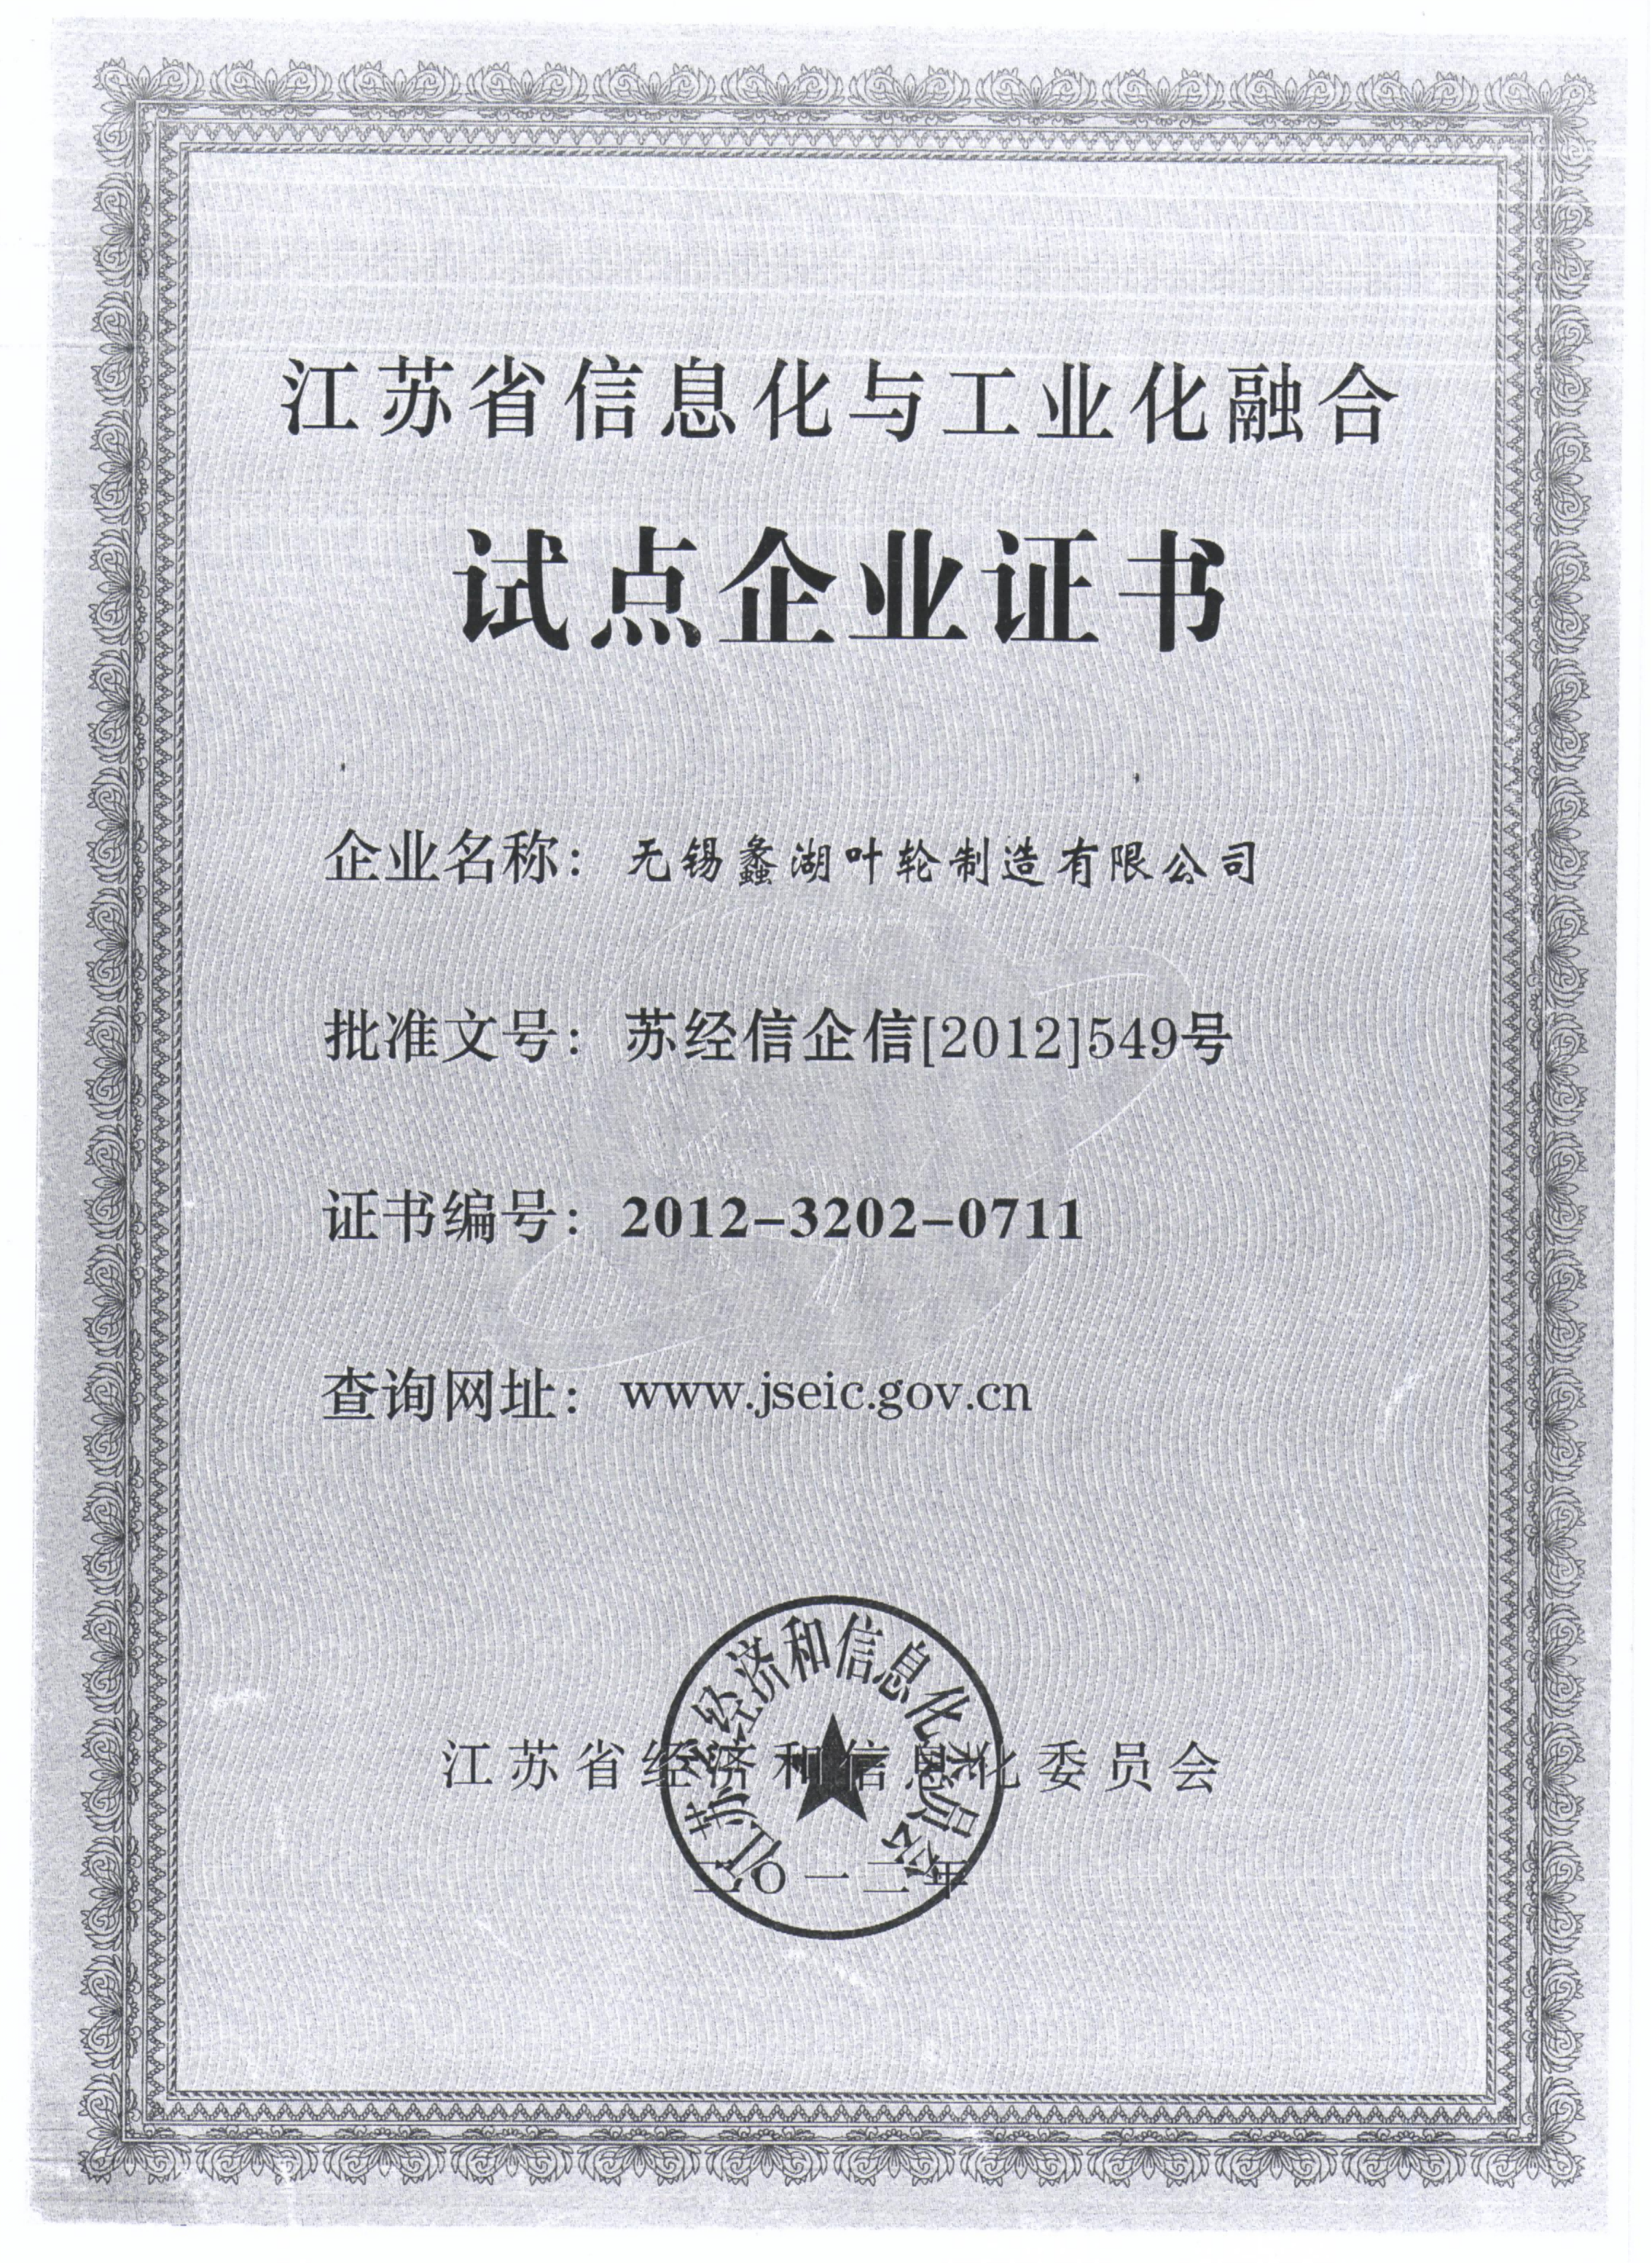 江苏省信息化与工业化融合试点企业证书_00(1)(1)(1).png